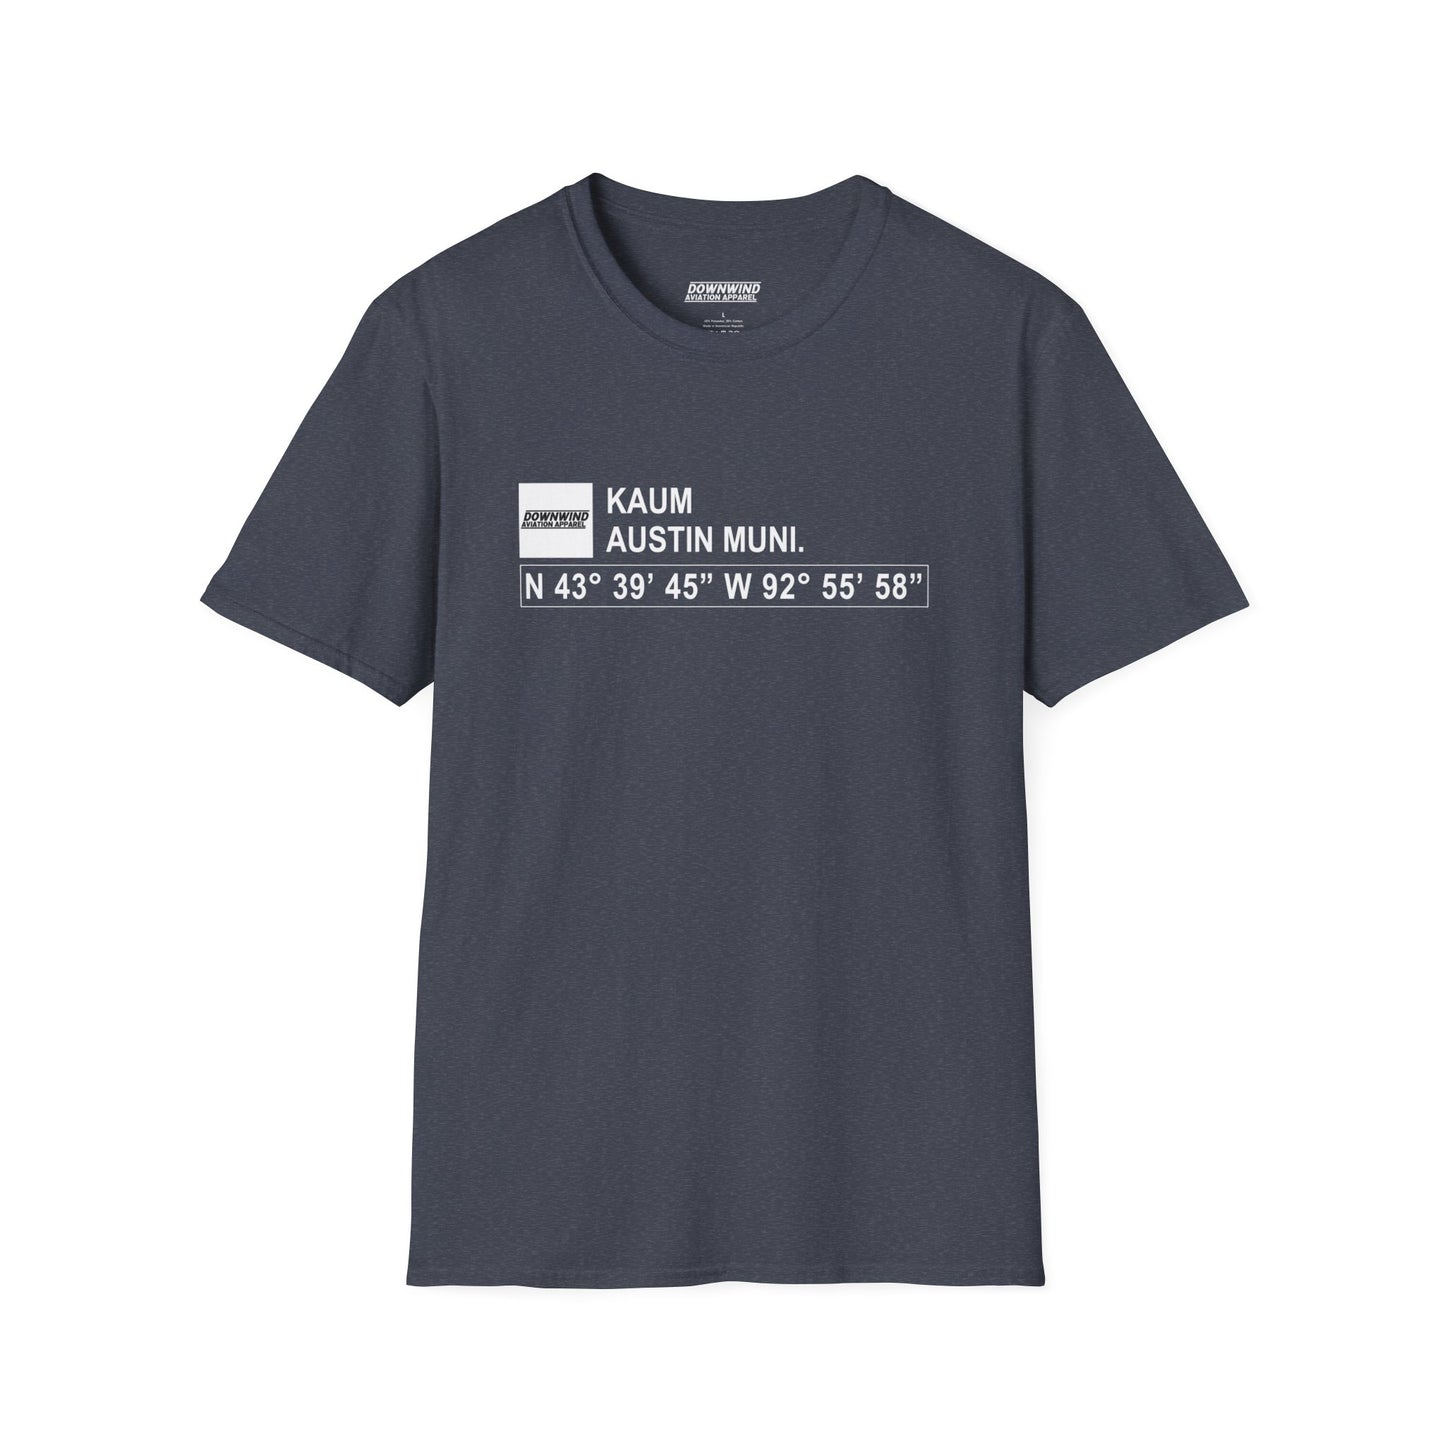 KAUM / Austin Muni. T-Shirt